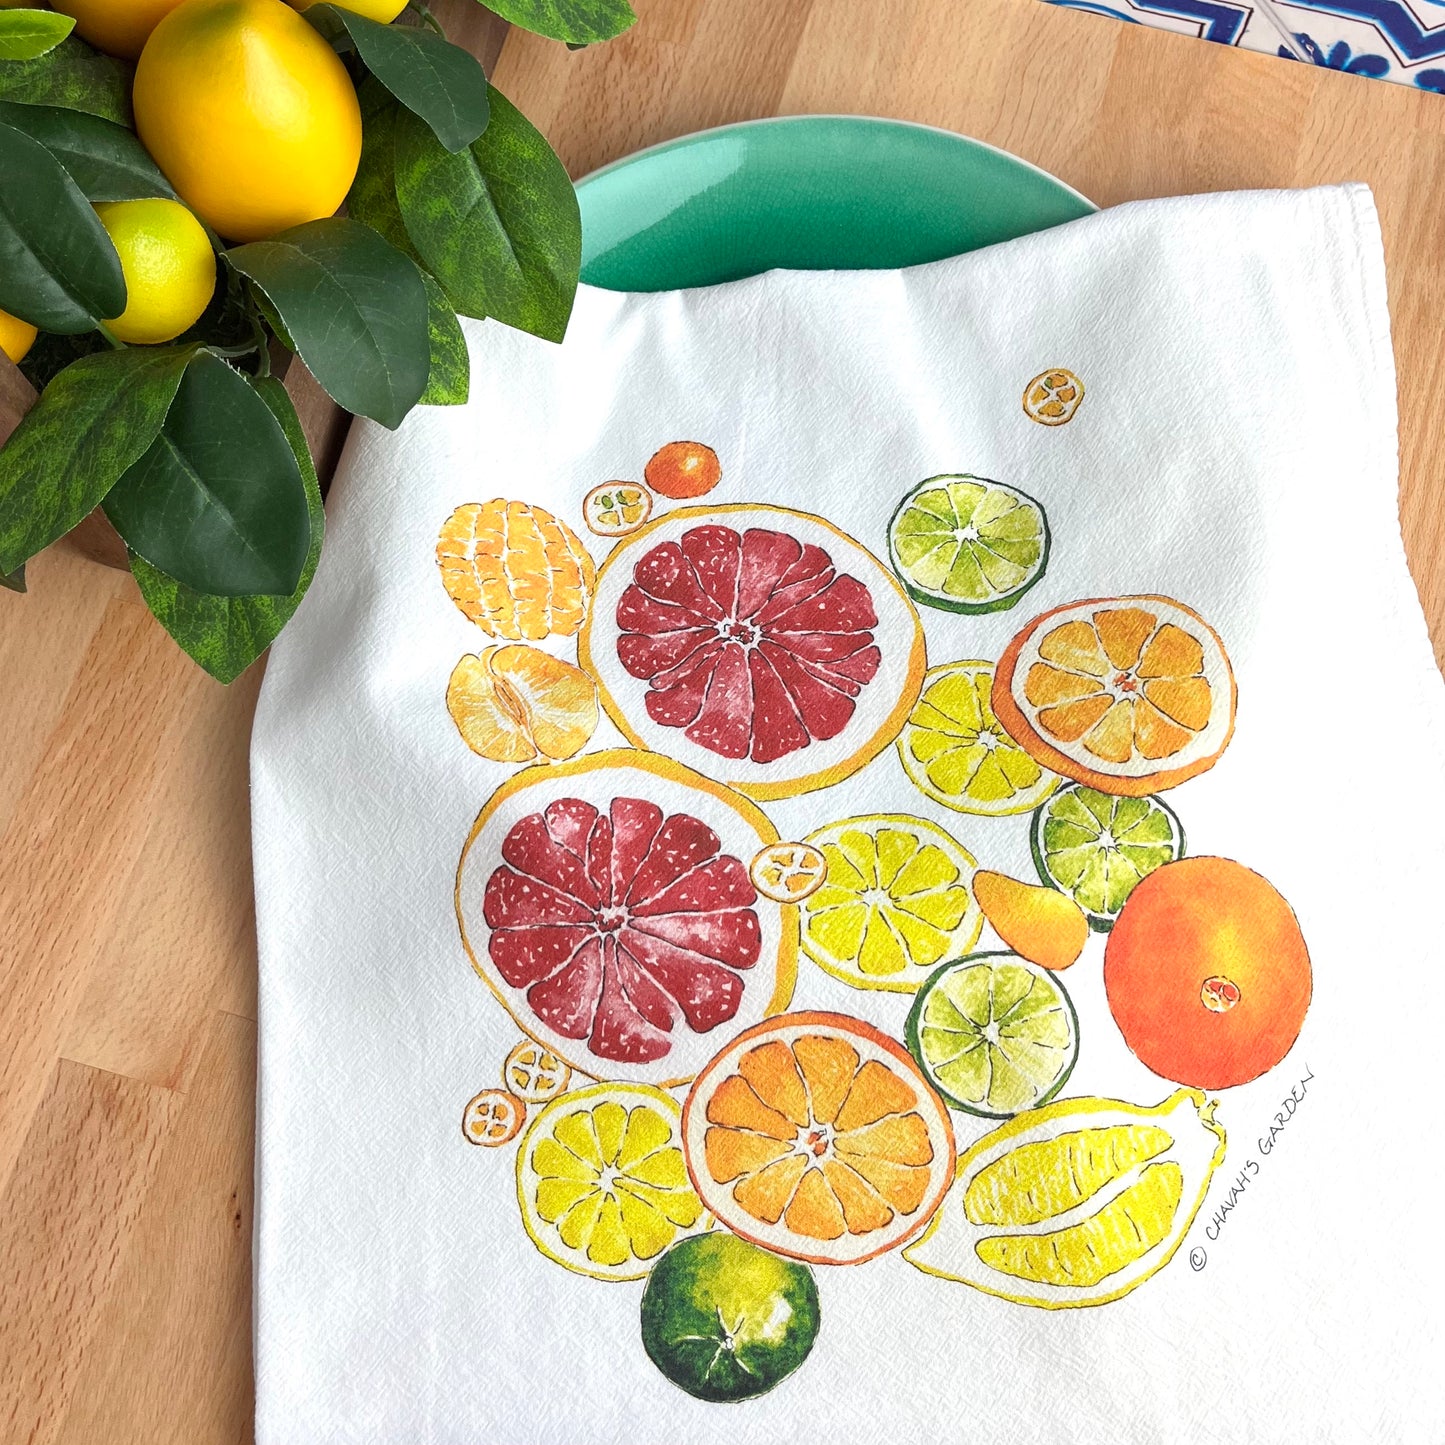 Flour Sack Tea Towels, Citrus, Garden Theme